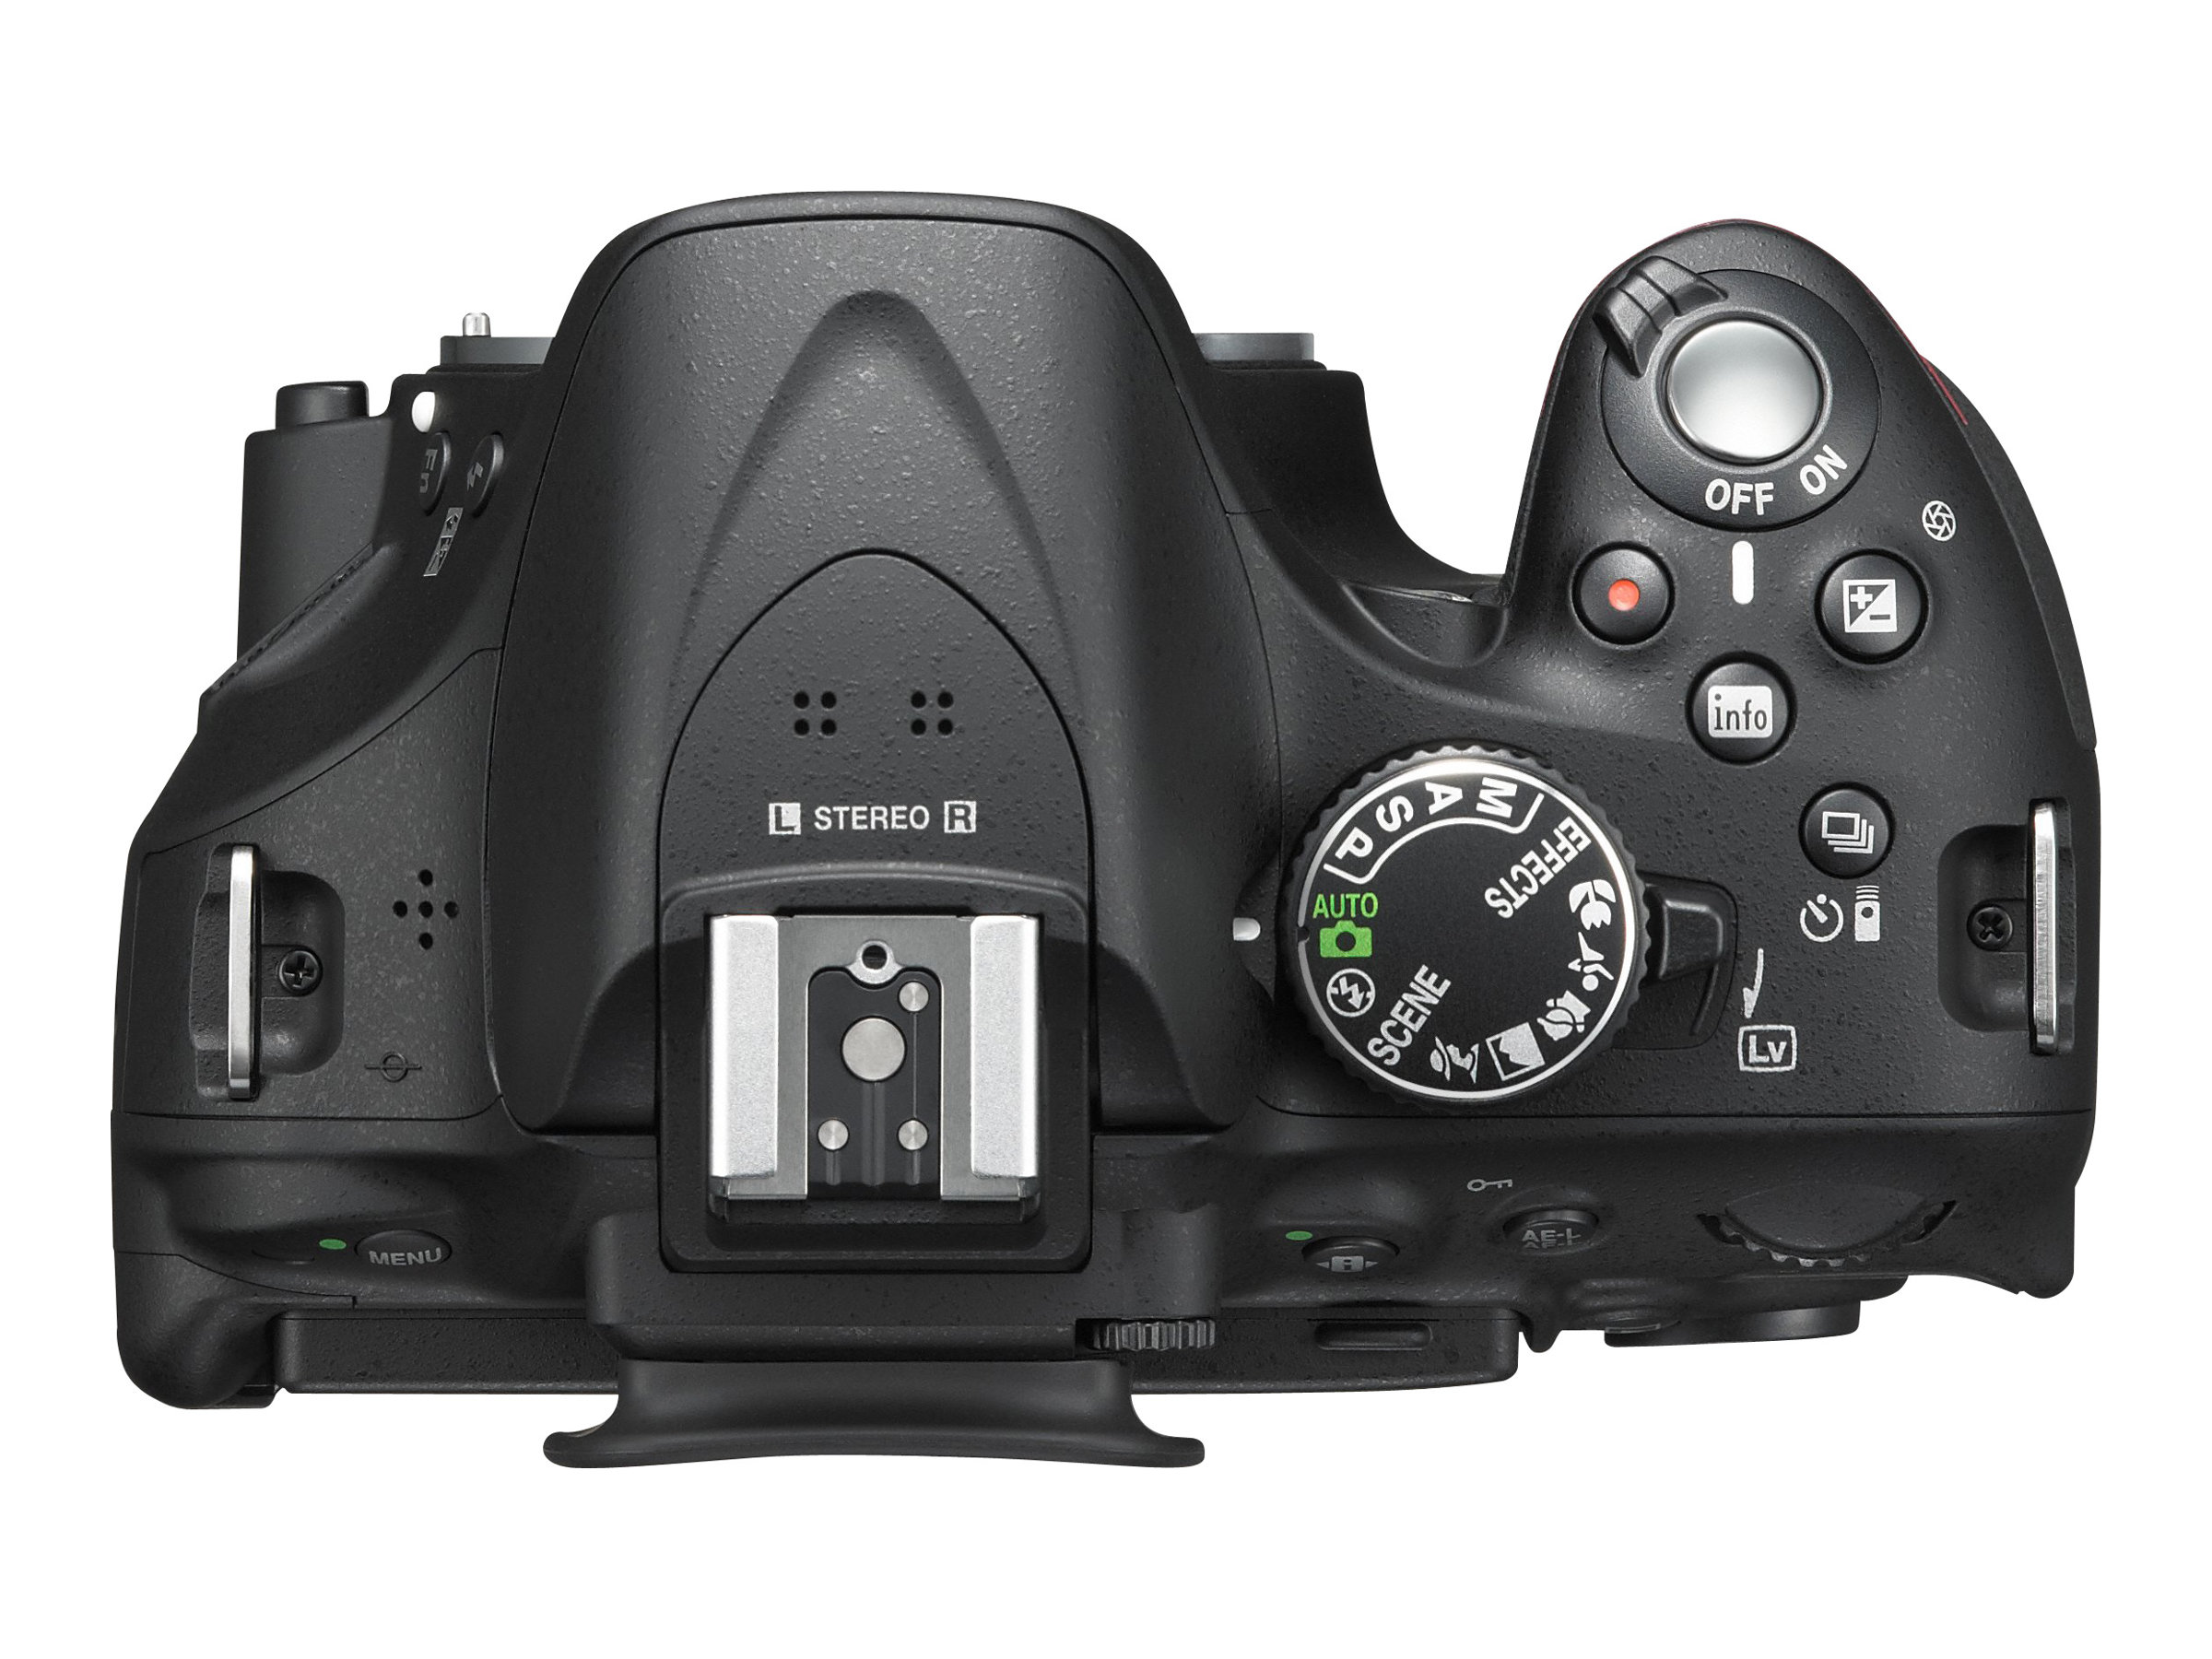 Nikon D5200/D5600 DSLR Camera with Nikon 18-140mm VR DX Lens - image 2 of 5